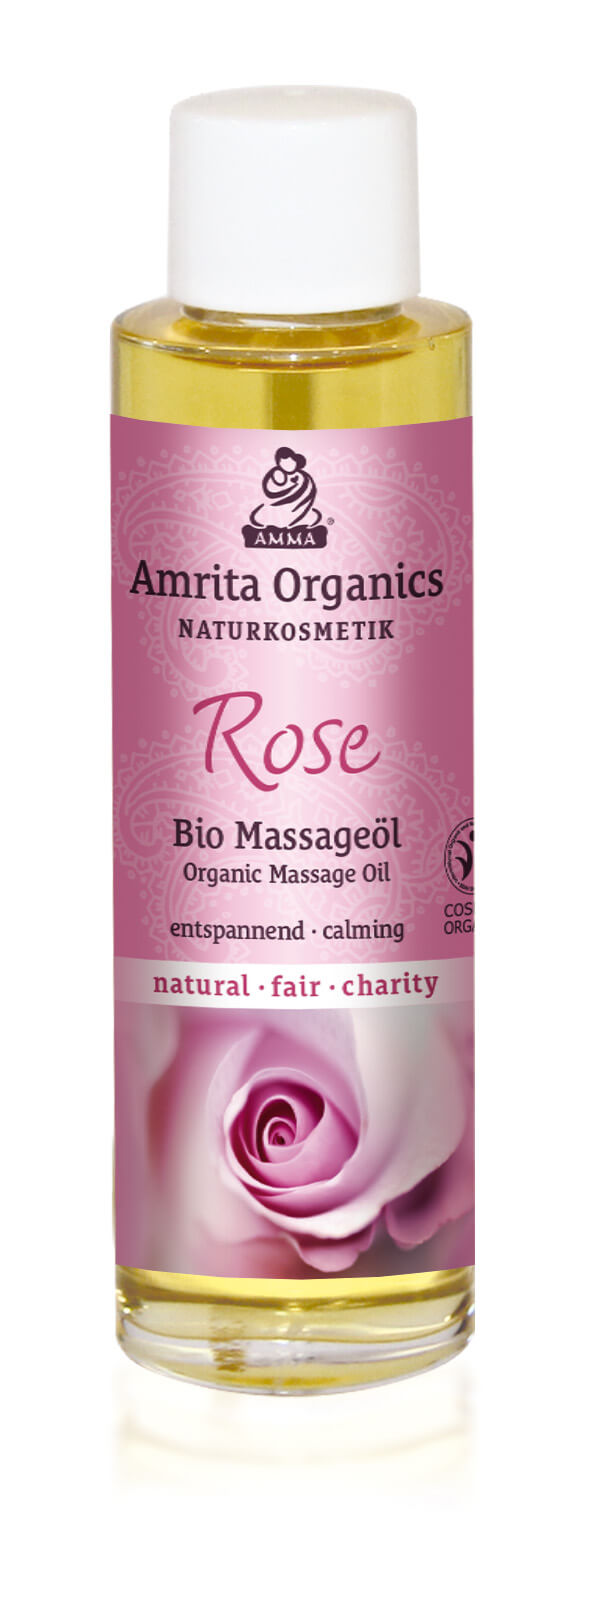 Massageöl Rose, bio